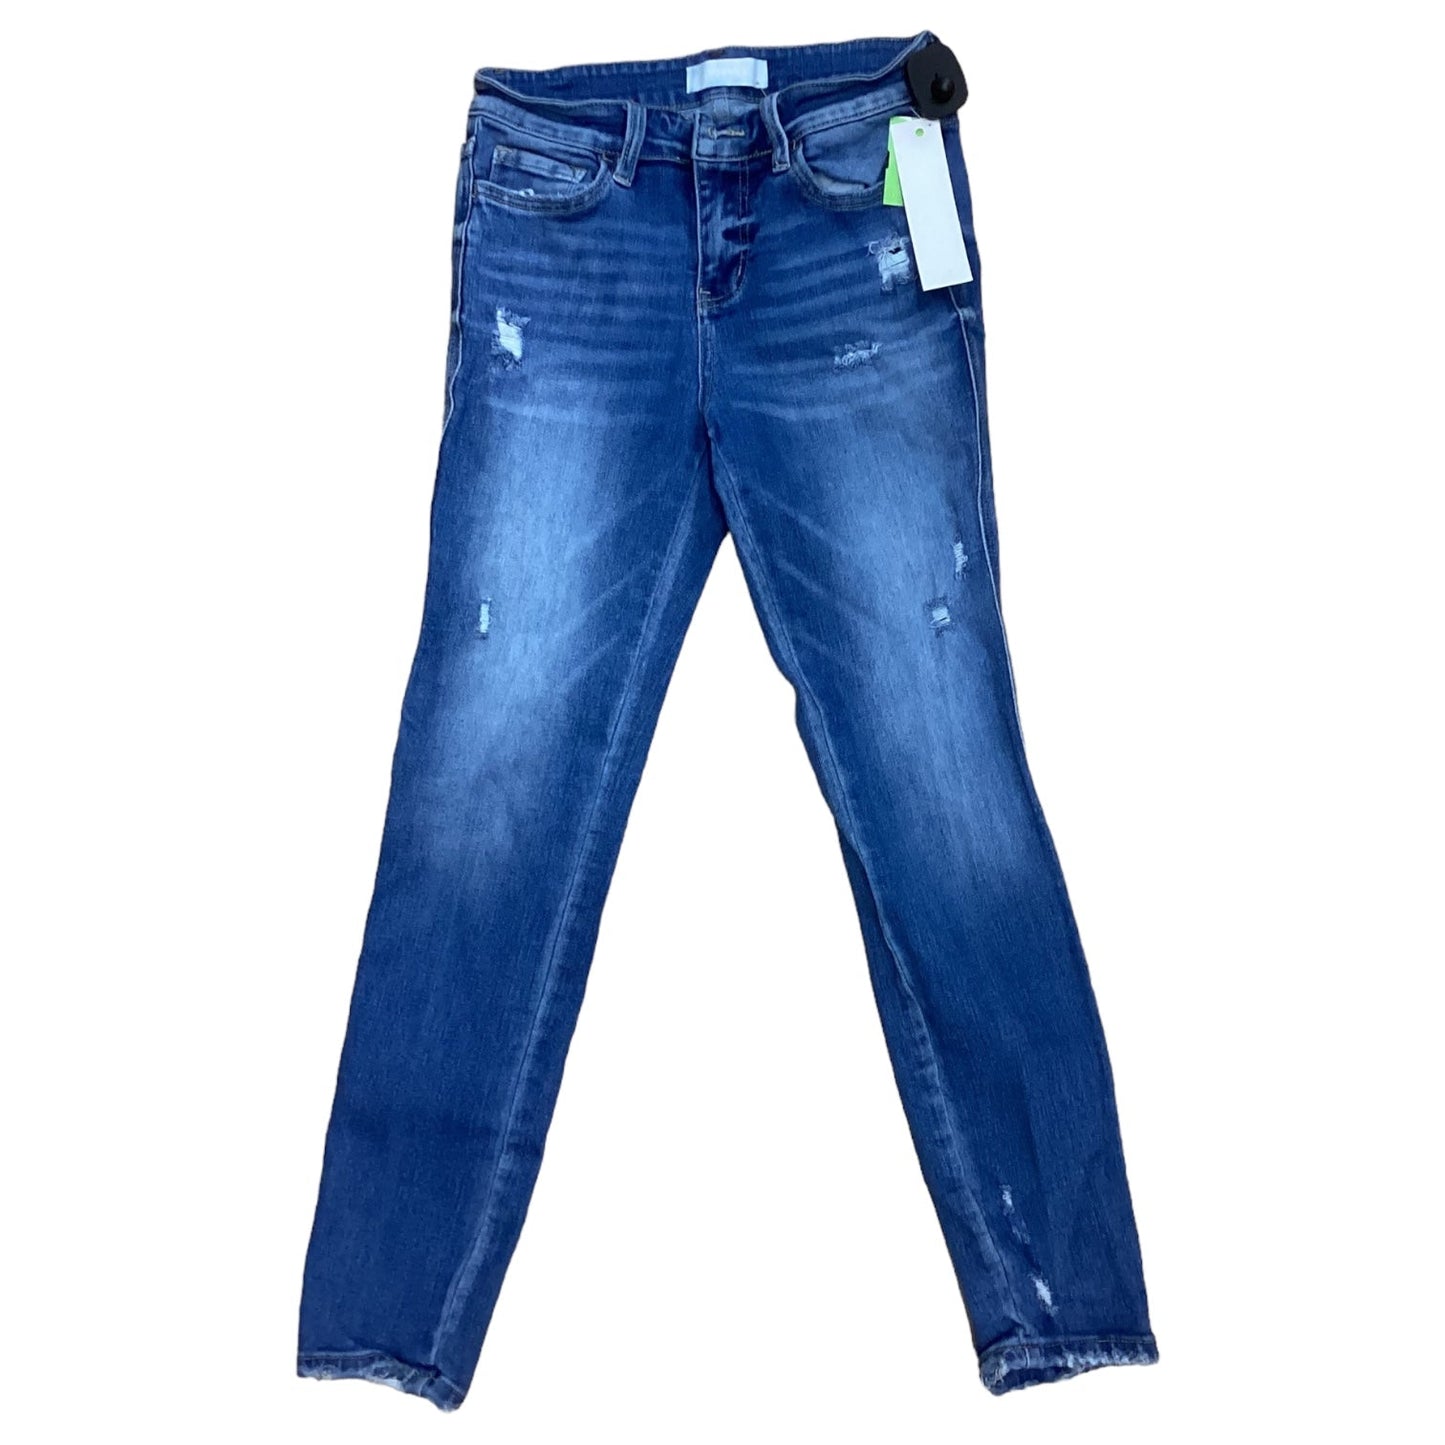 Jeans Designer By Vervet  Size: 4